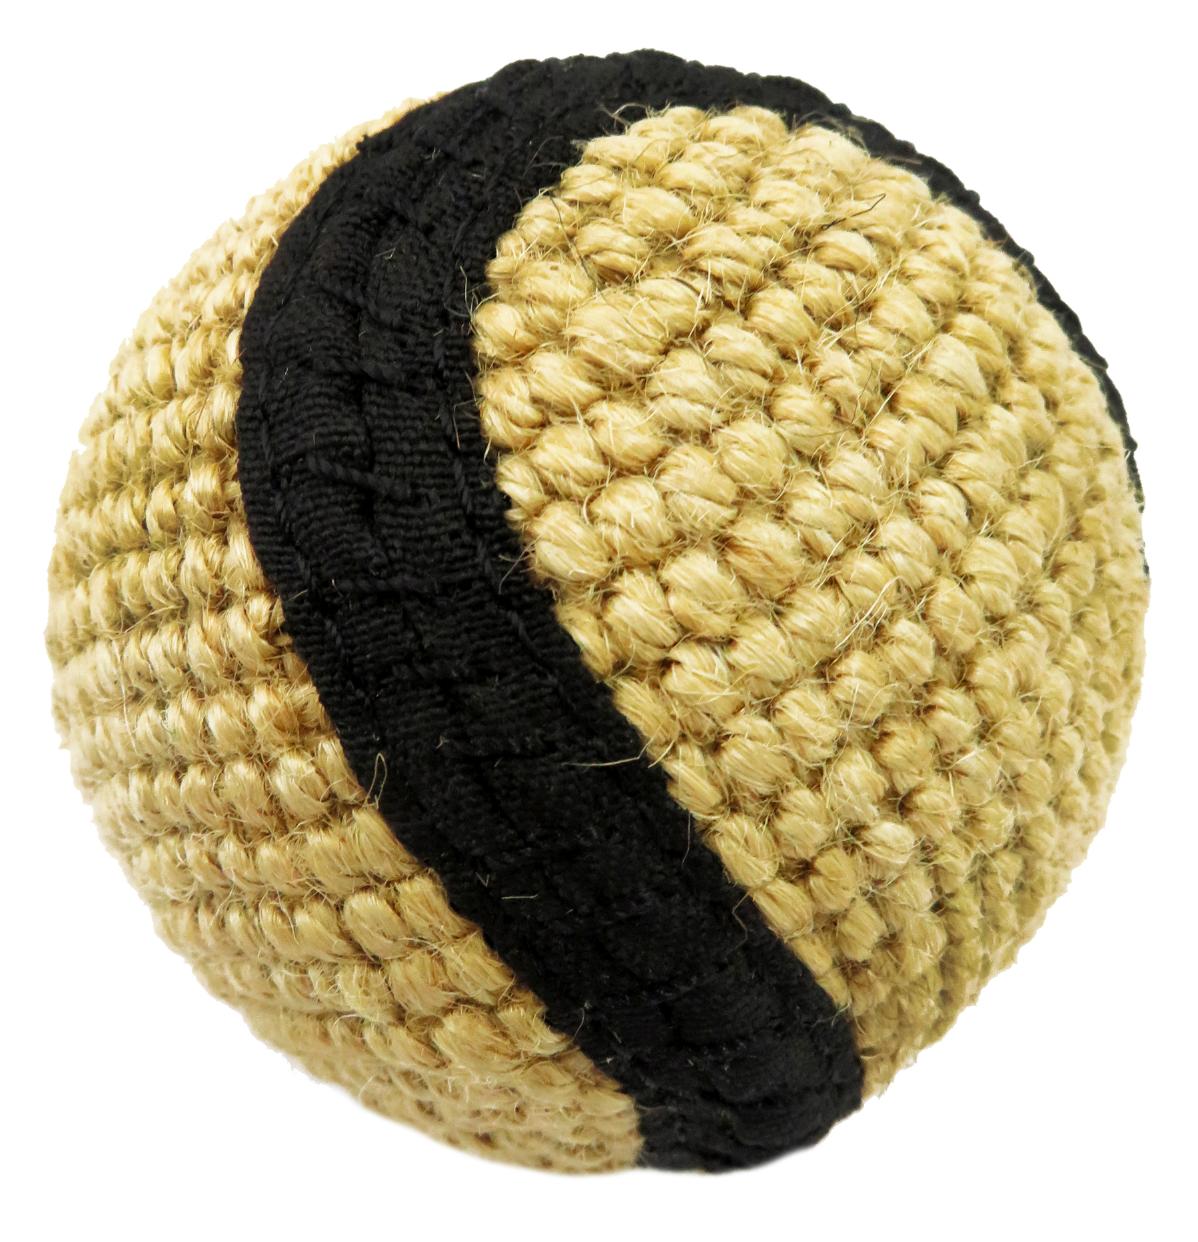 Buffalo Игрушка для собак Мяч плетеный 6см джут